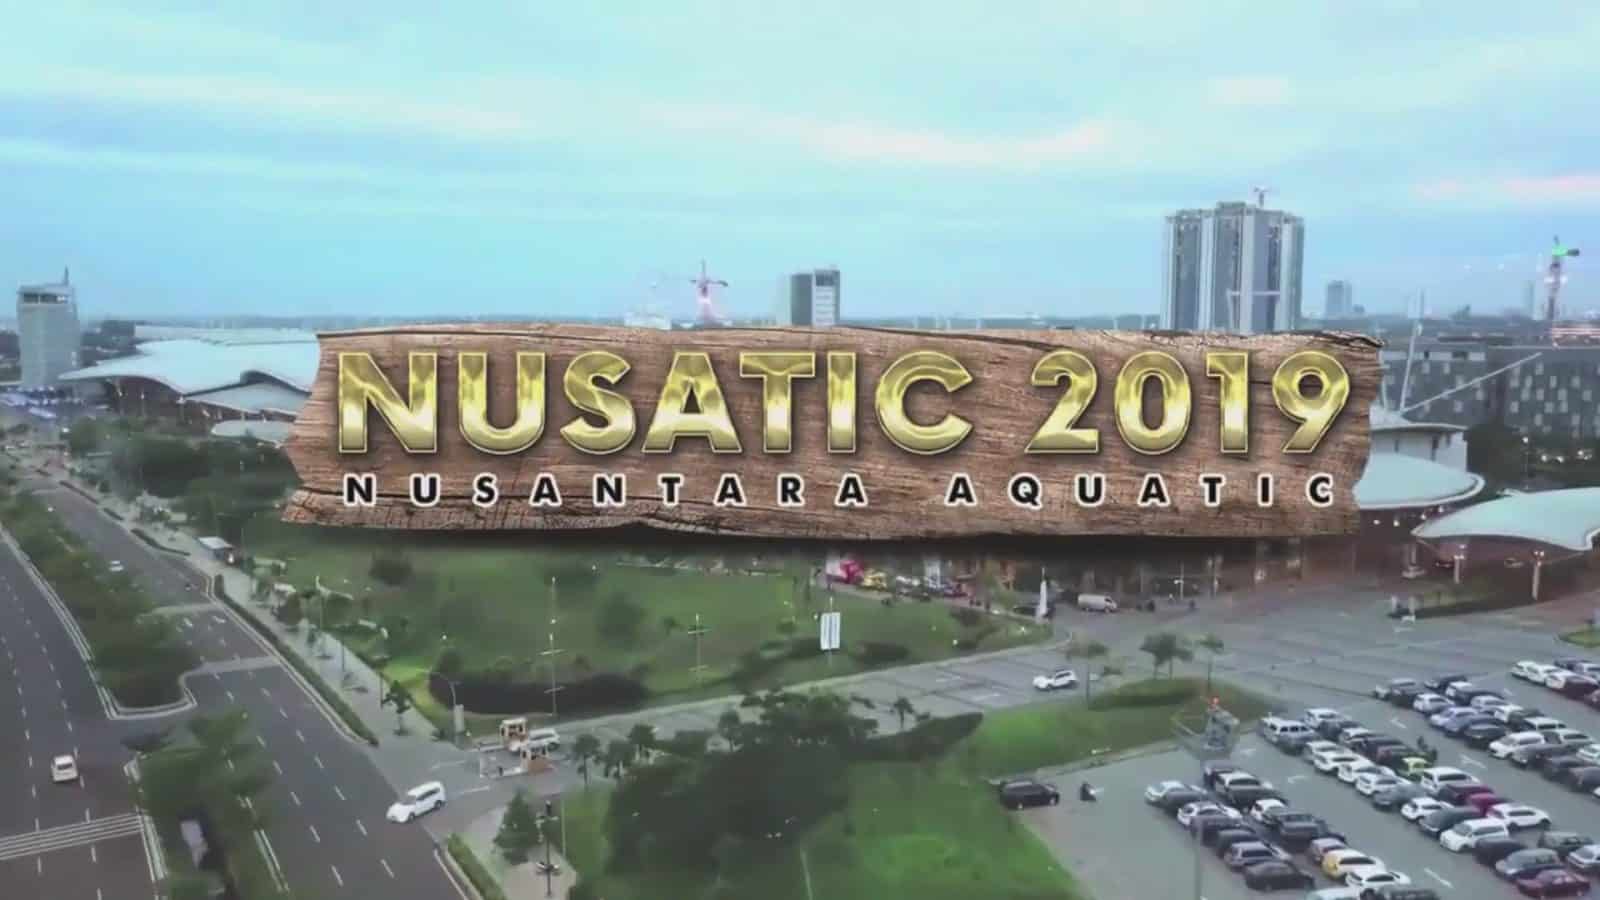 Nusatic 2019